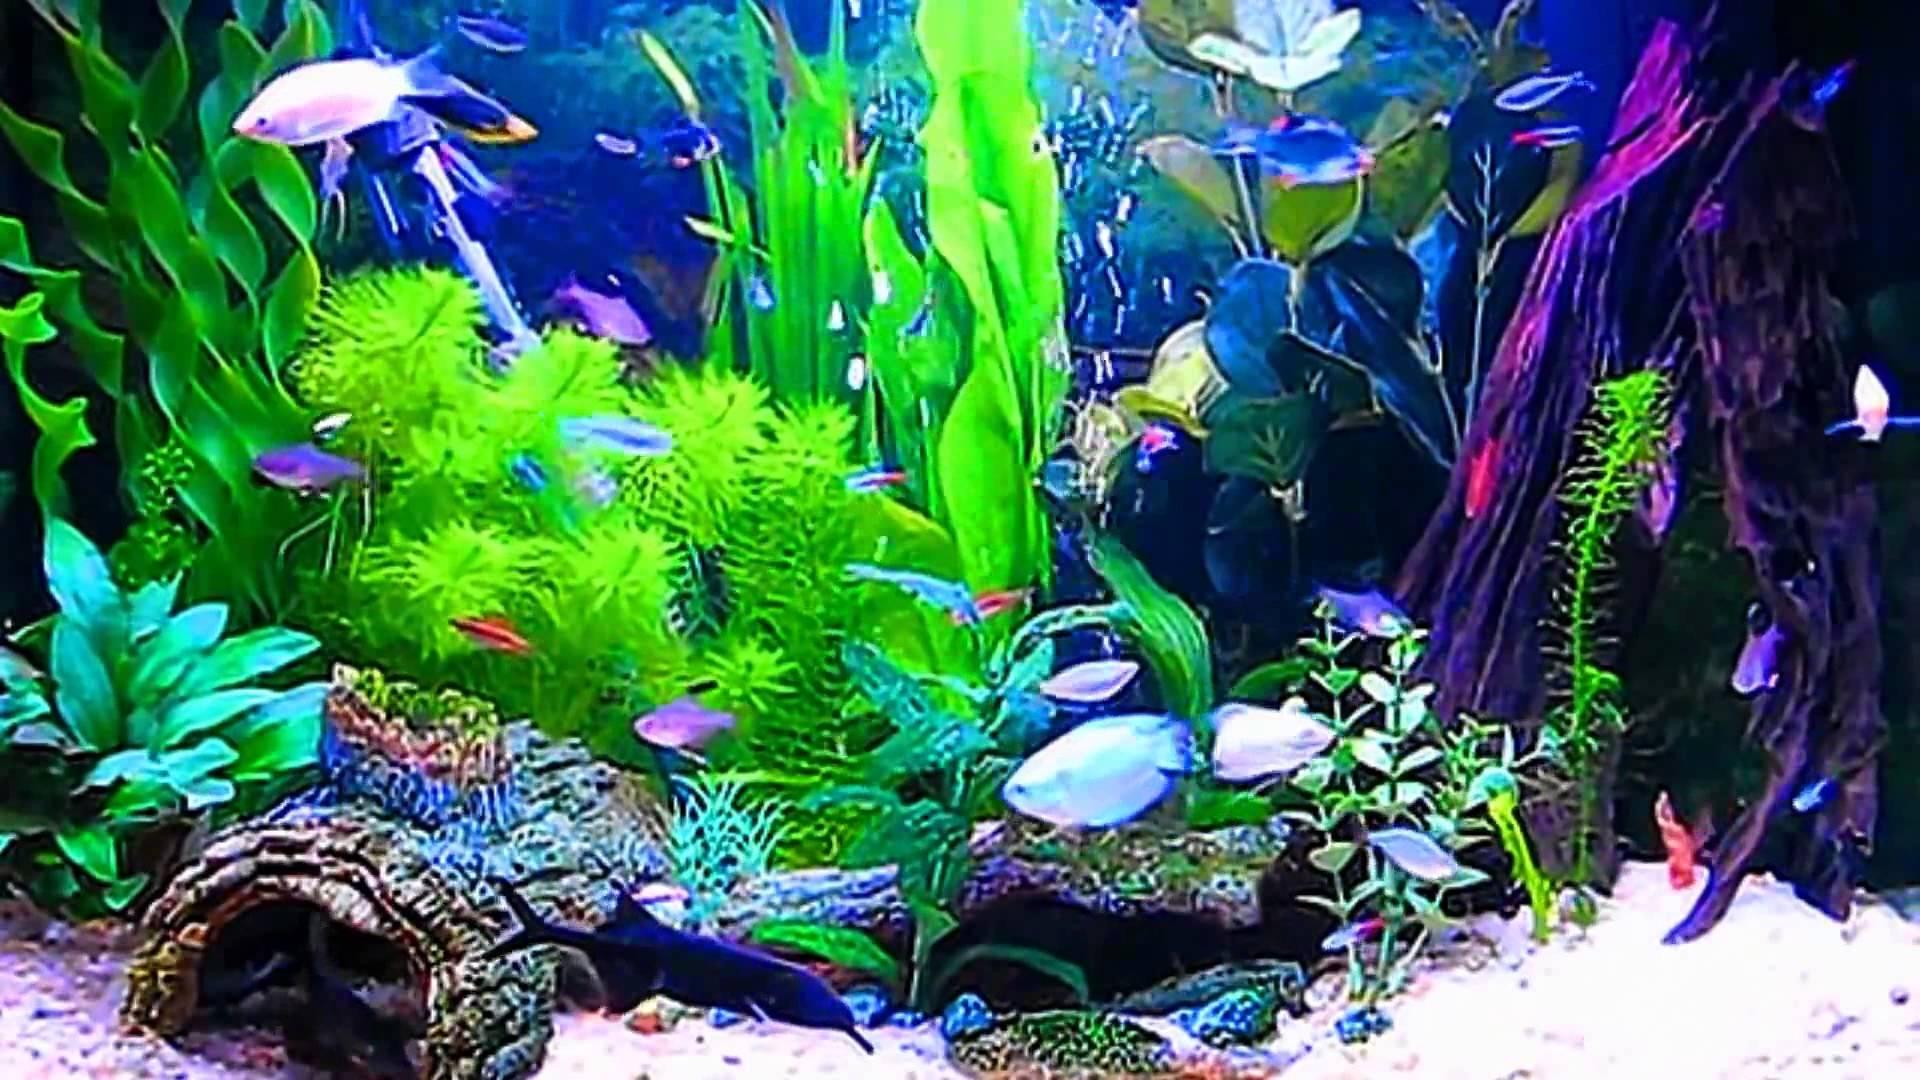 wallpaper aquario,freshwater aquarium,aquarium decor,aquarium,aquatic plant,marine biology